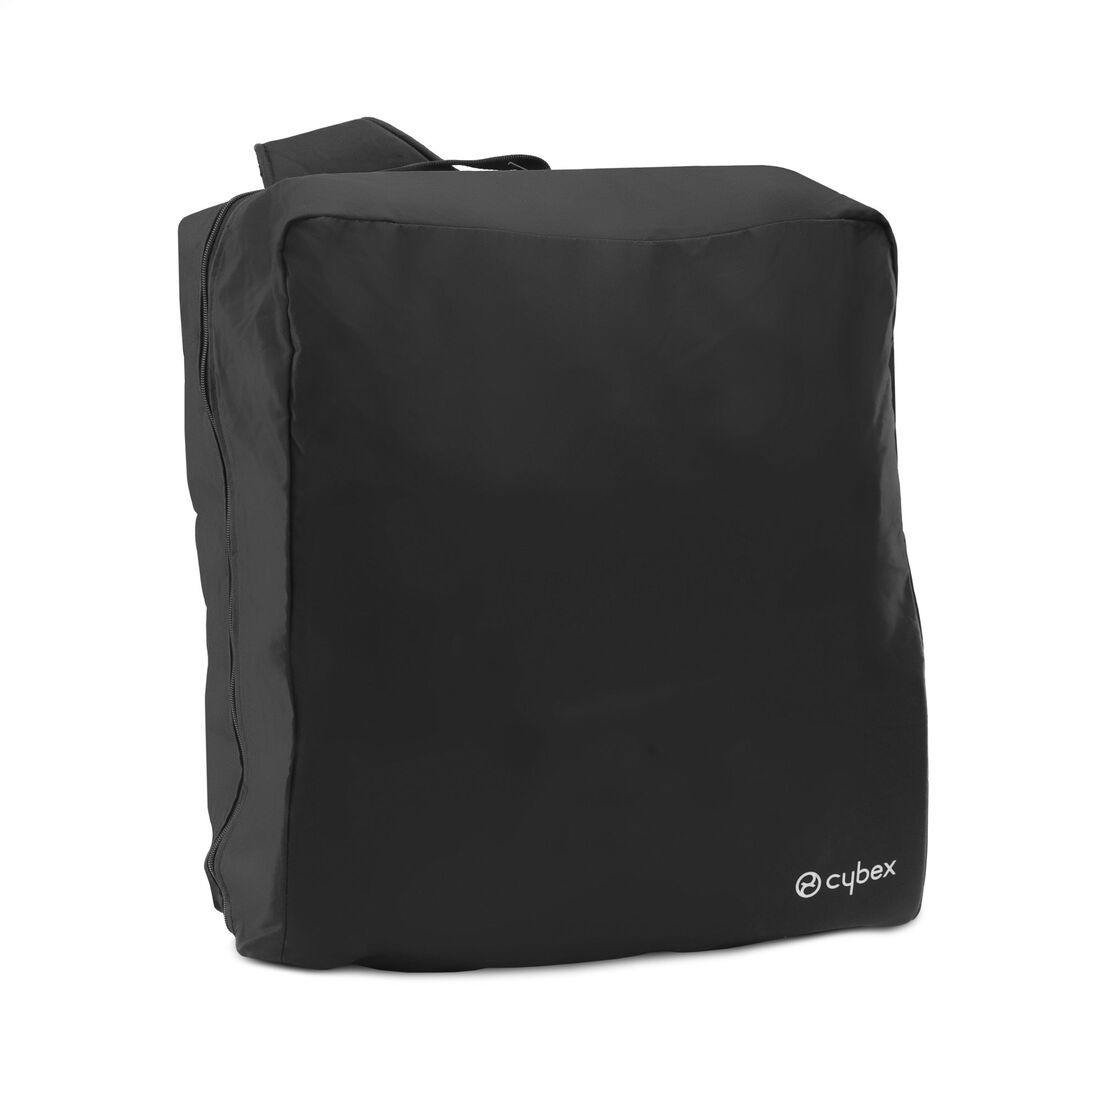 CYBEX Travel Bag Beezy / Eezy S Line - Black in Black large image number 2